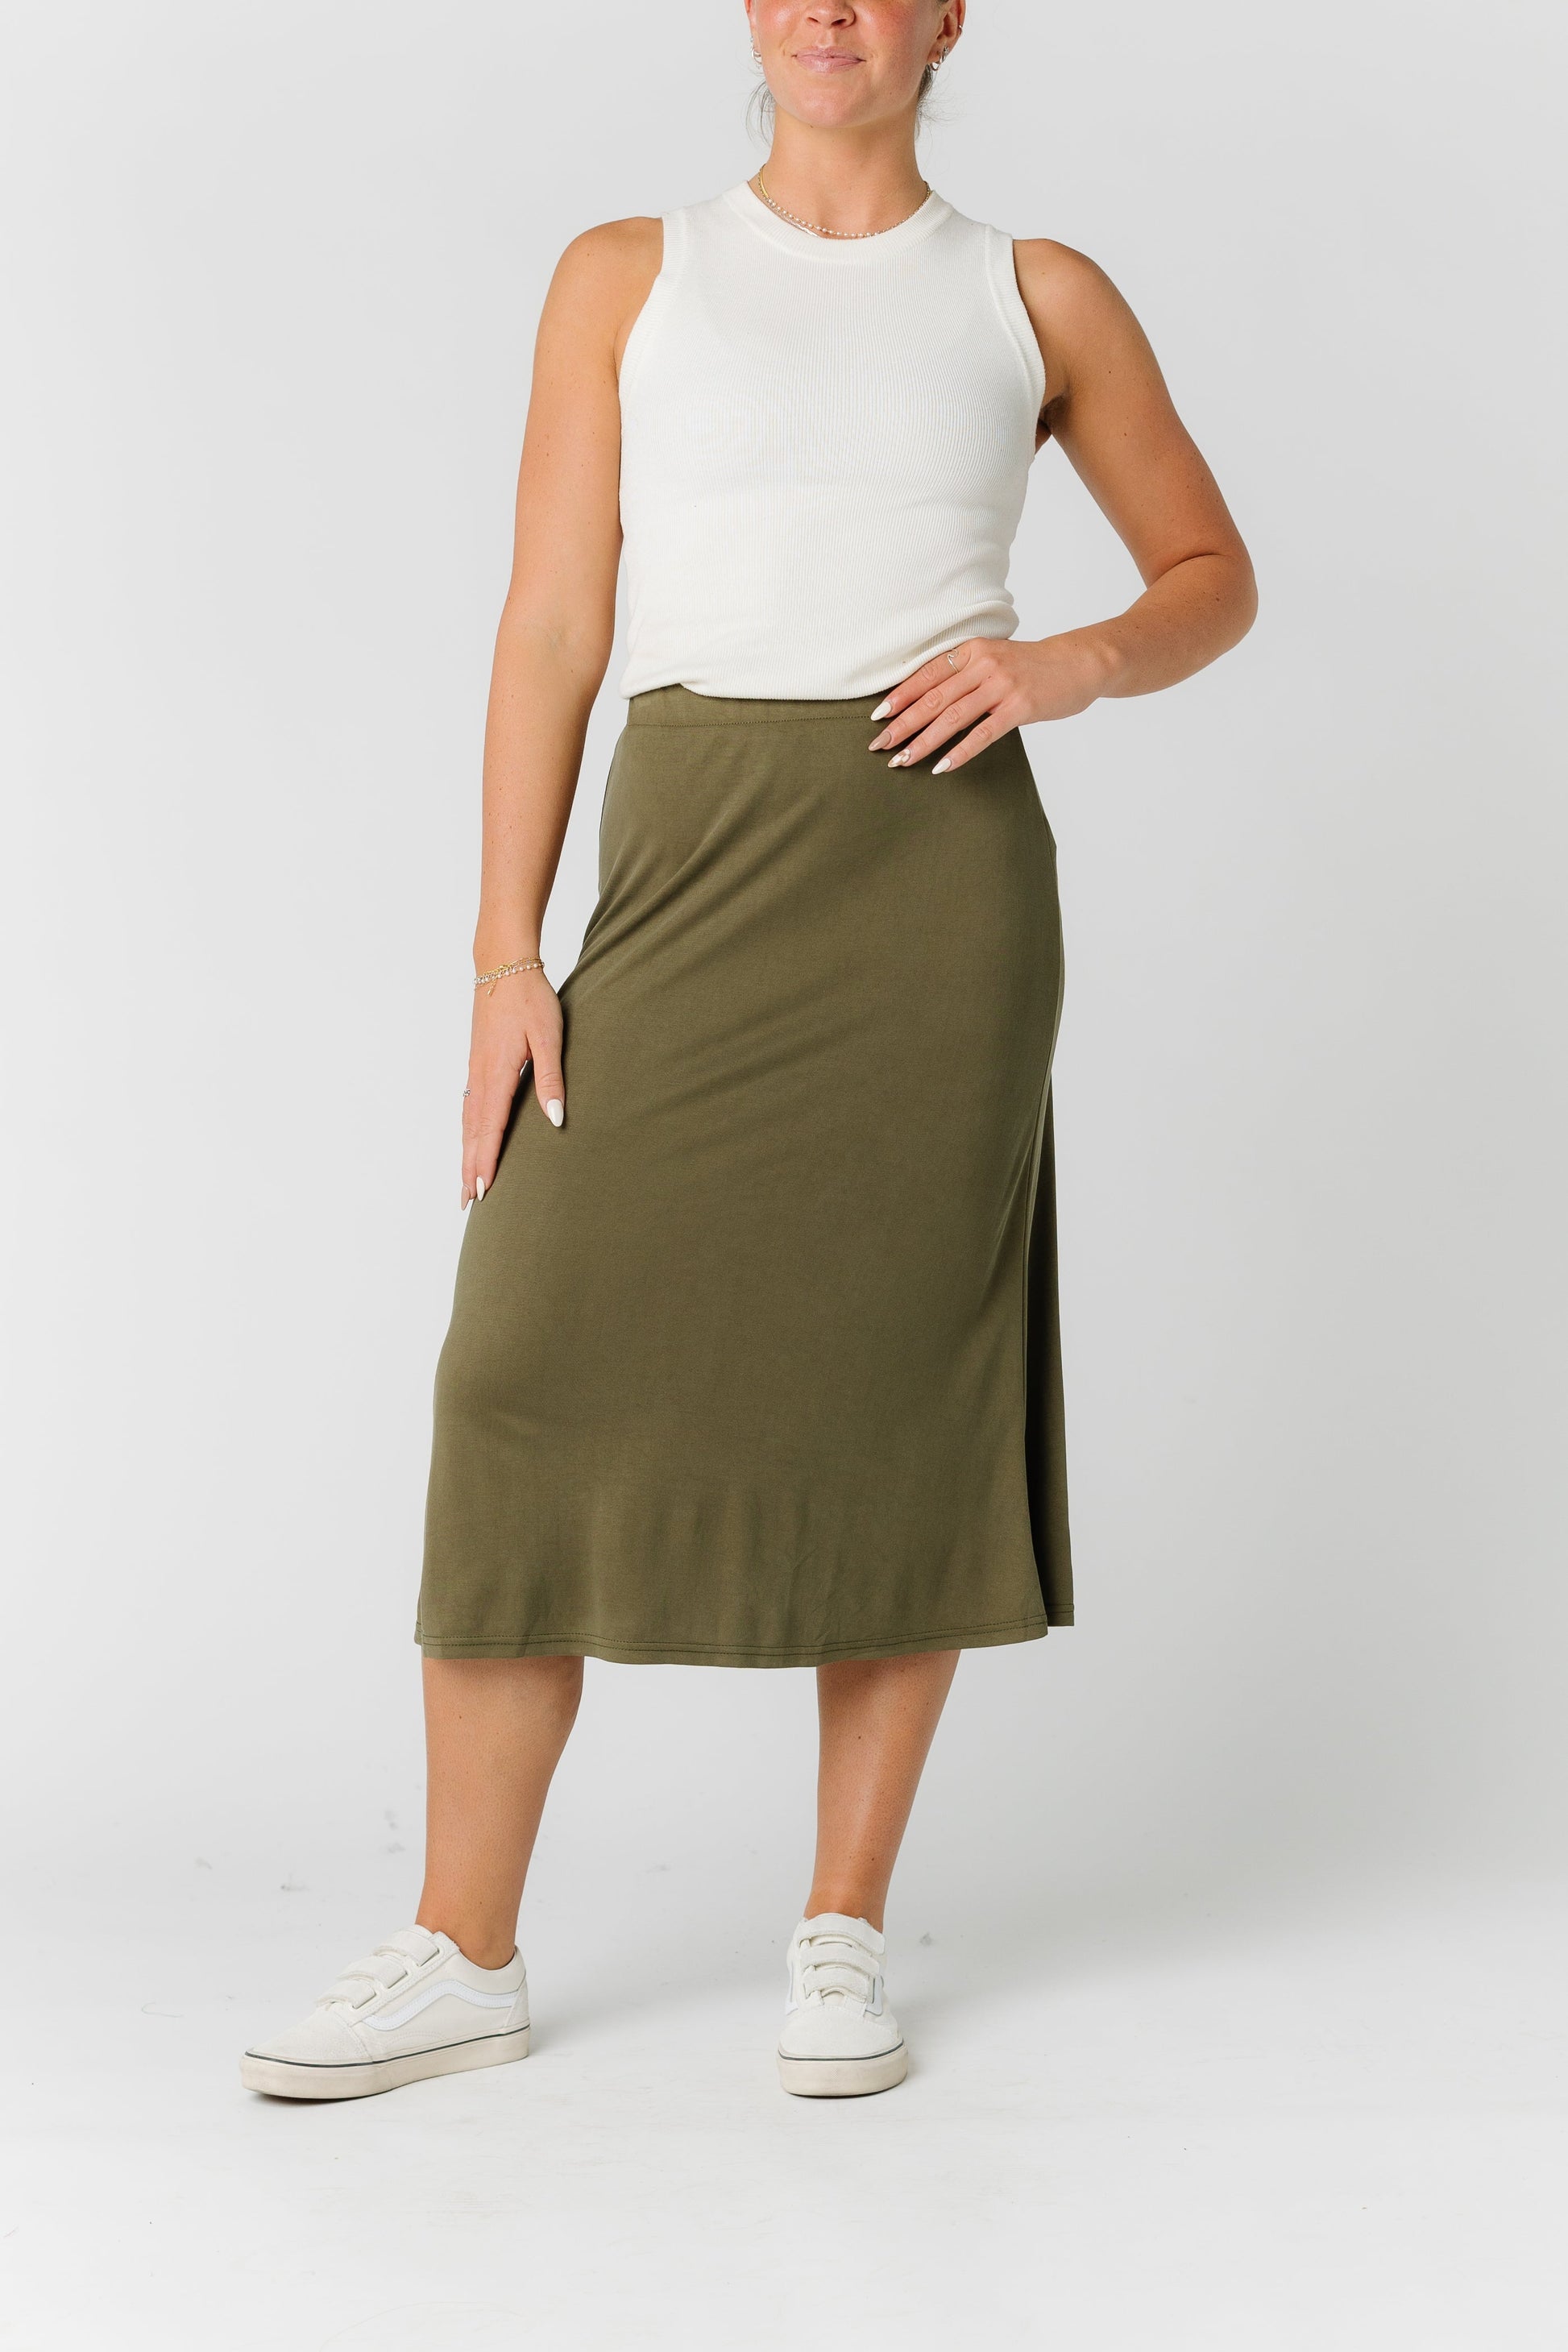 The Milena Skirt WOMEN'S SKIRTS Mod Ref 